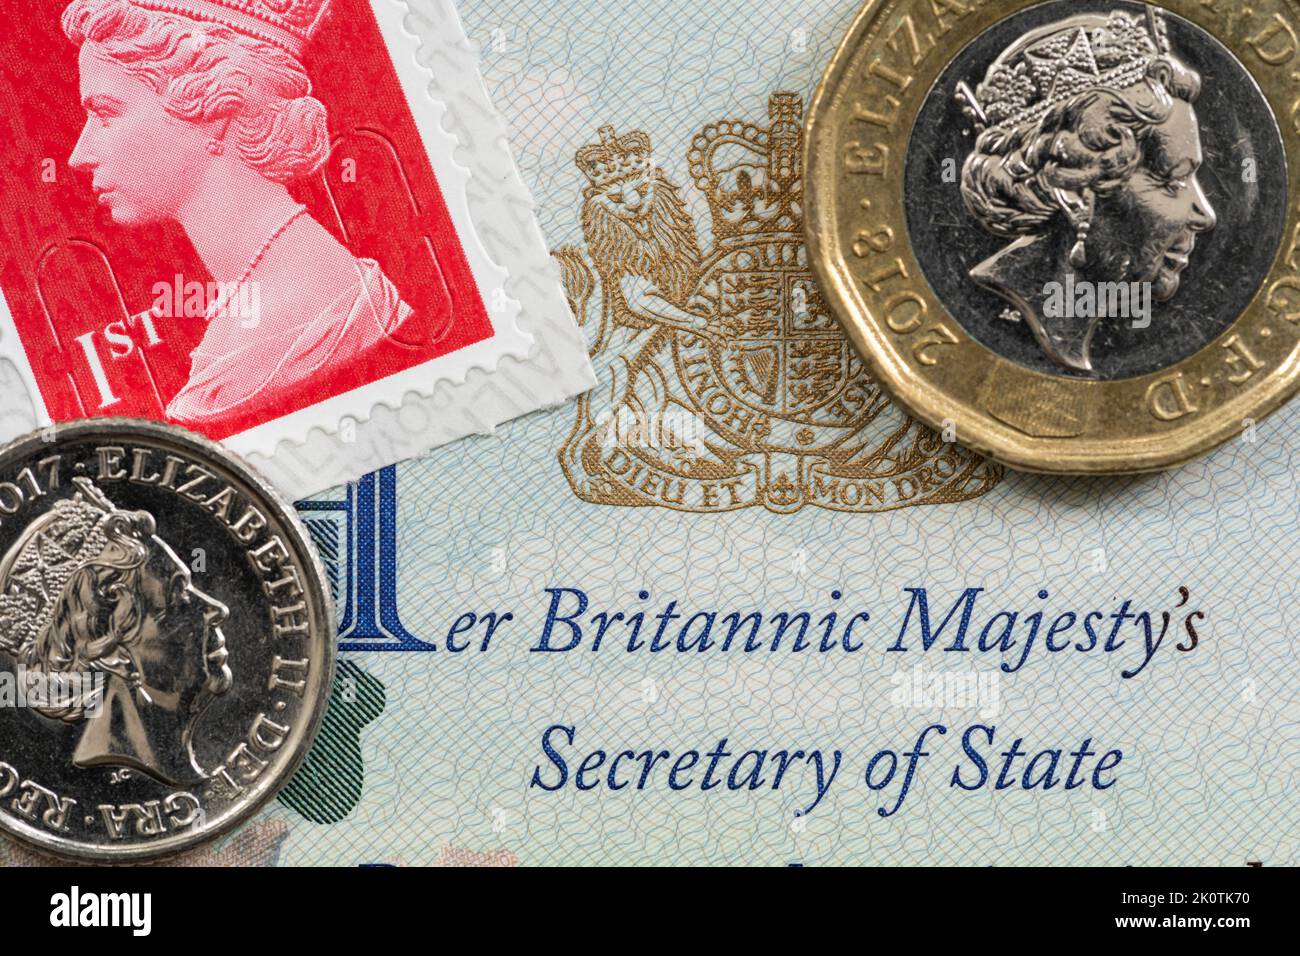 Die Entnahme des Namens und des Bildes von Königin Elizabeth II aus dem öffentlichen Leben wird einige Zeit dauern - Passseite, Briefmarken und Münzen mit der Ikonographie der Königin Stockfoto